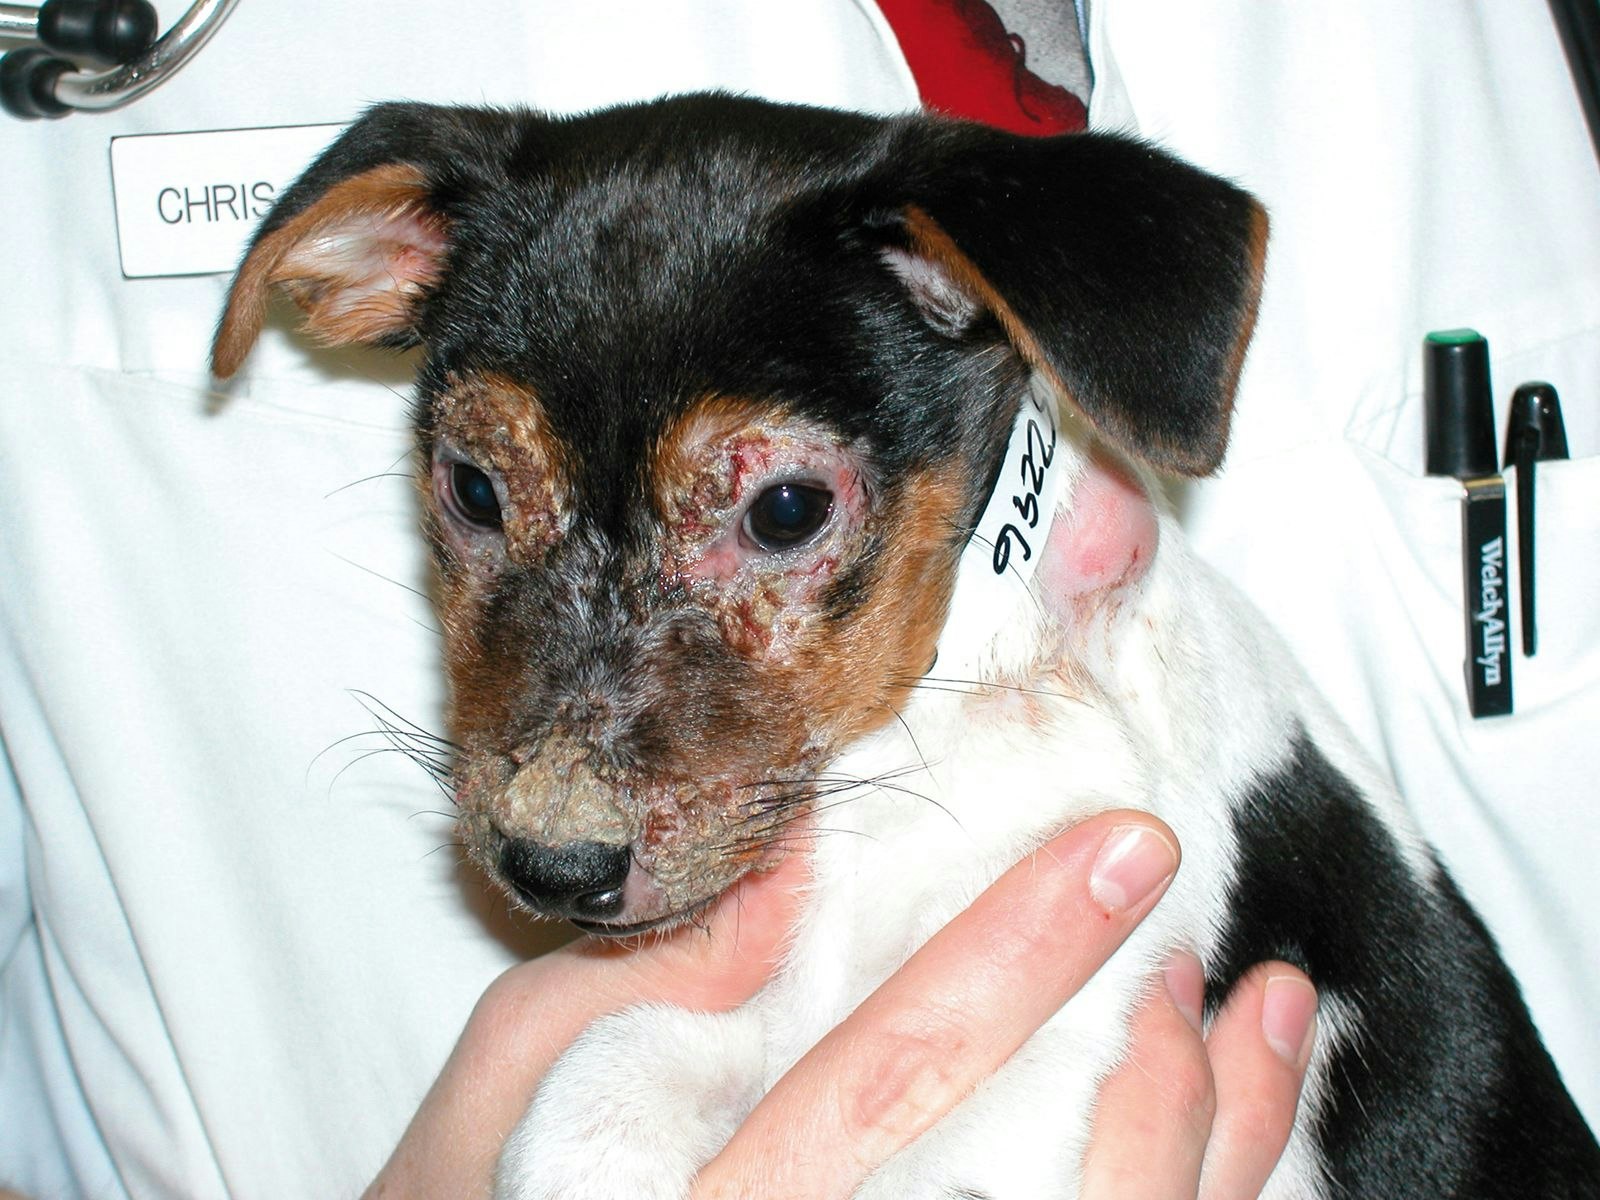 Costras y erosiones en la cara de un cachorro con celulitis juvenil.